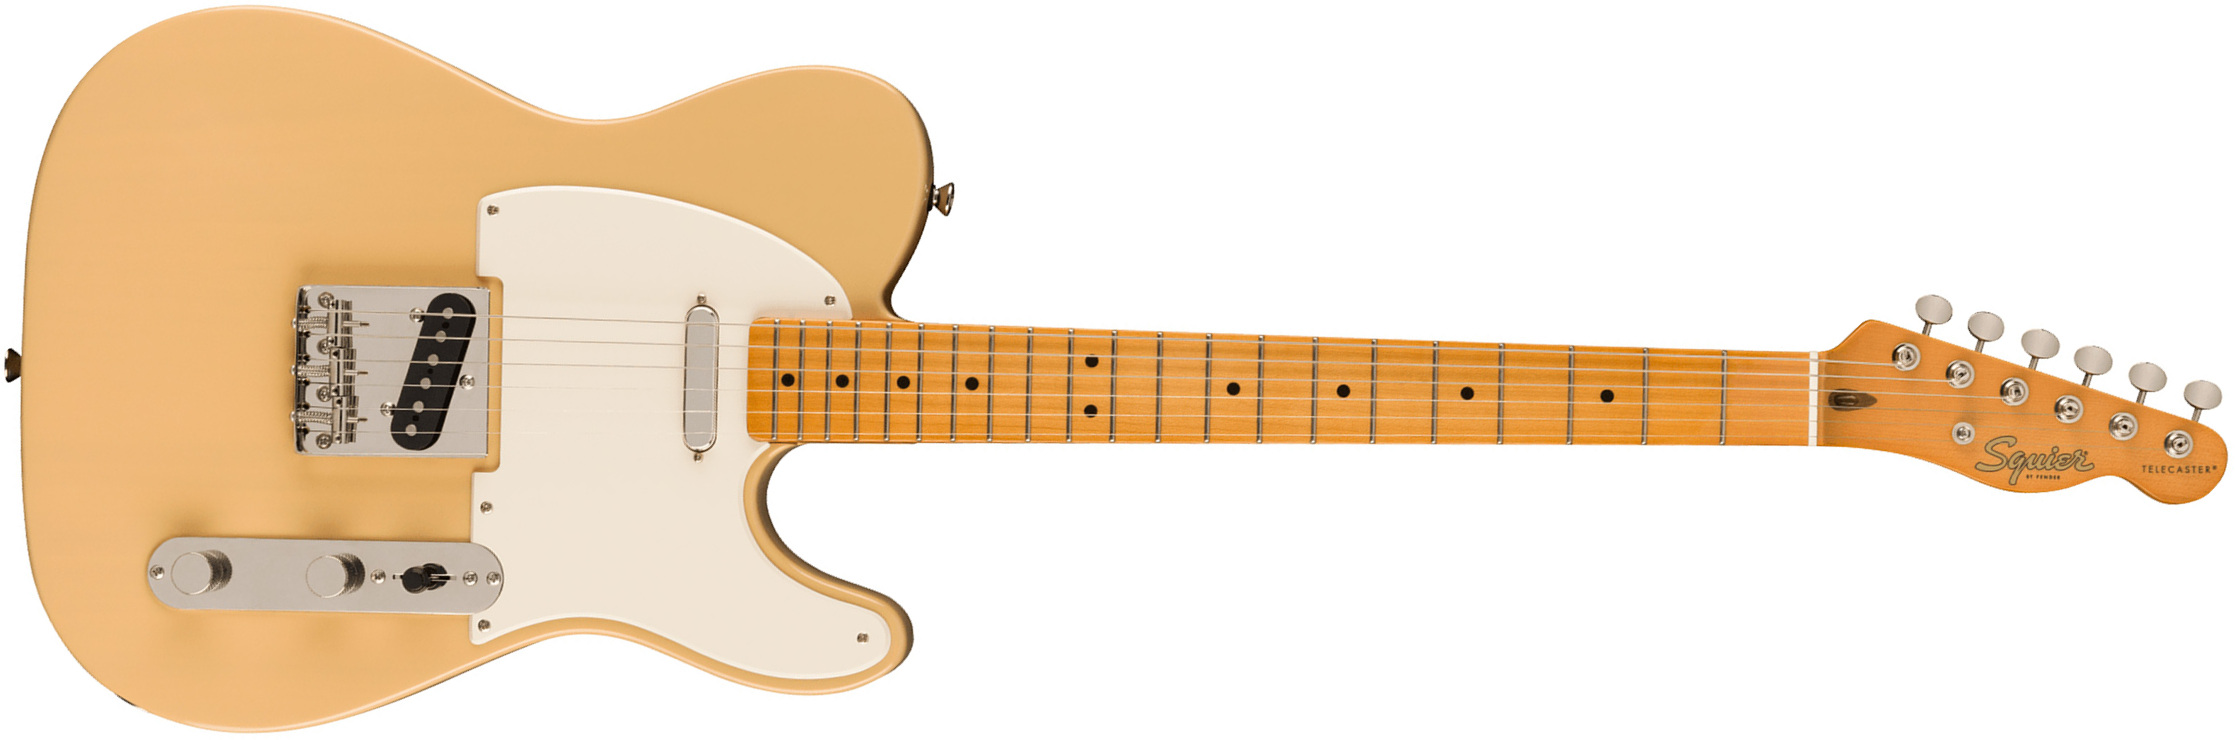 Squier Tele '50s Parchment Pickguard Classic Vibe Fsr 2s Ht Mn - Vintage Blonde - Televorm elektrische gitaar - Main picture